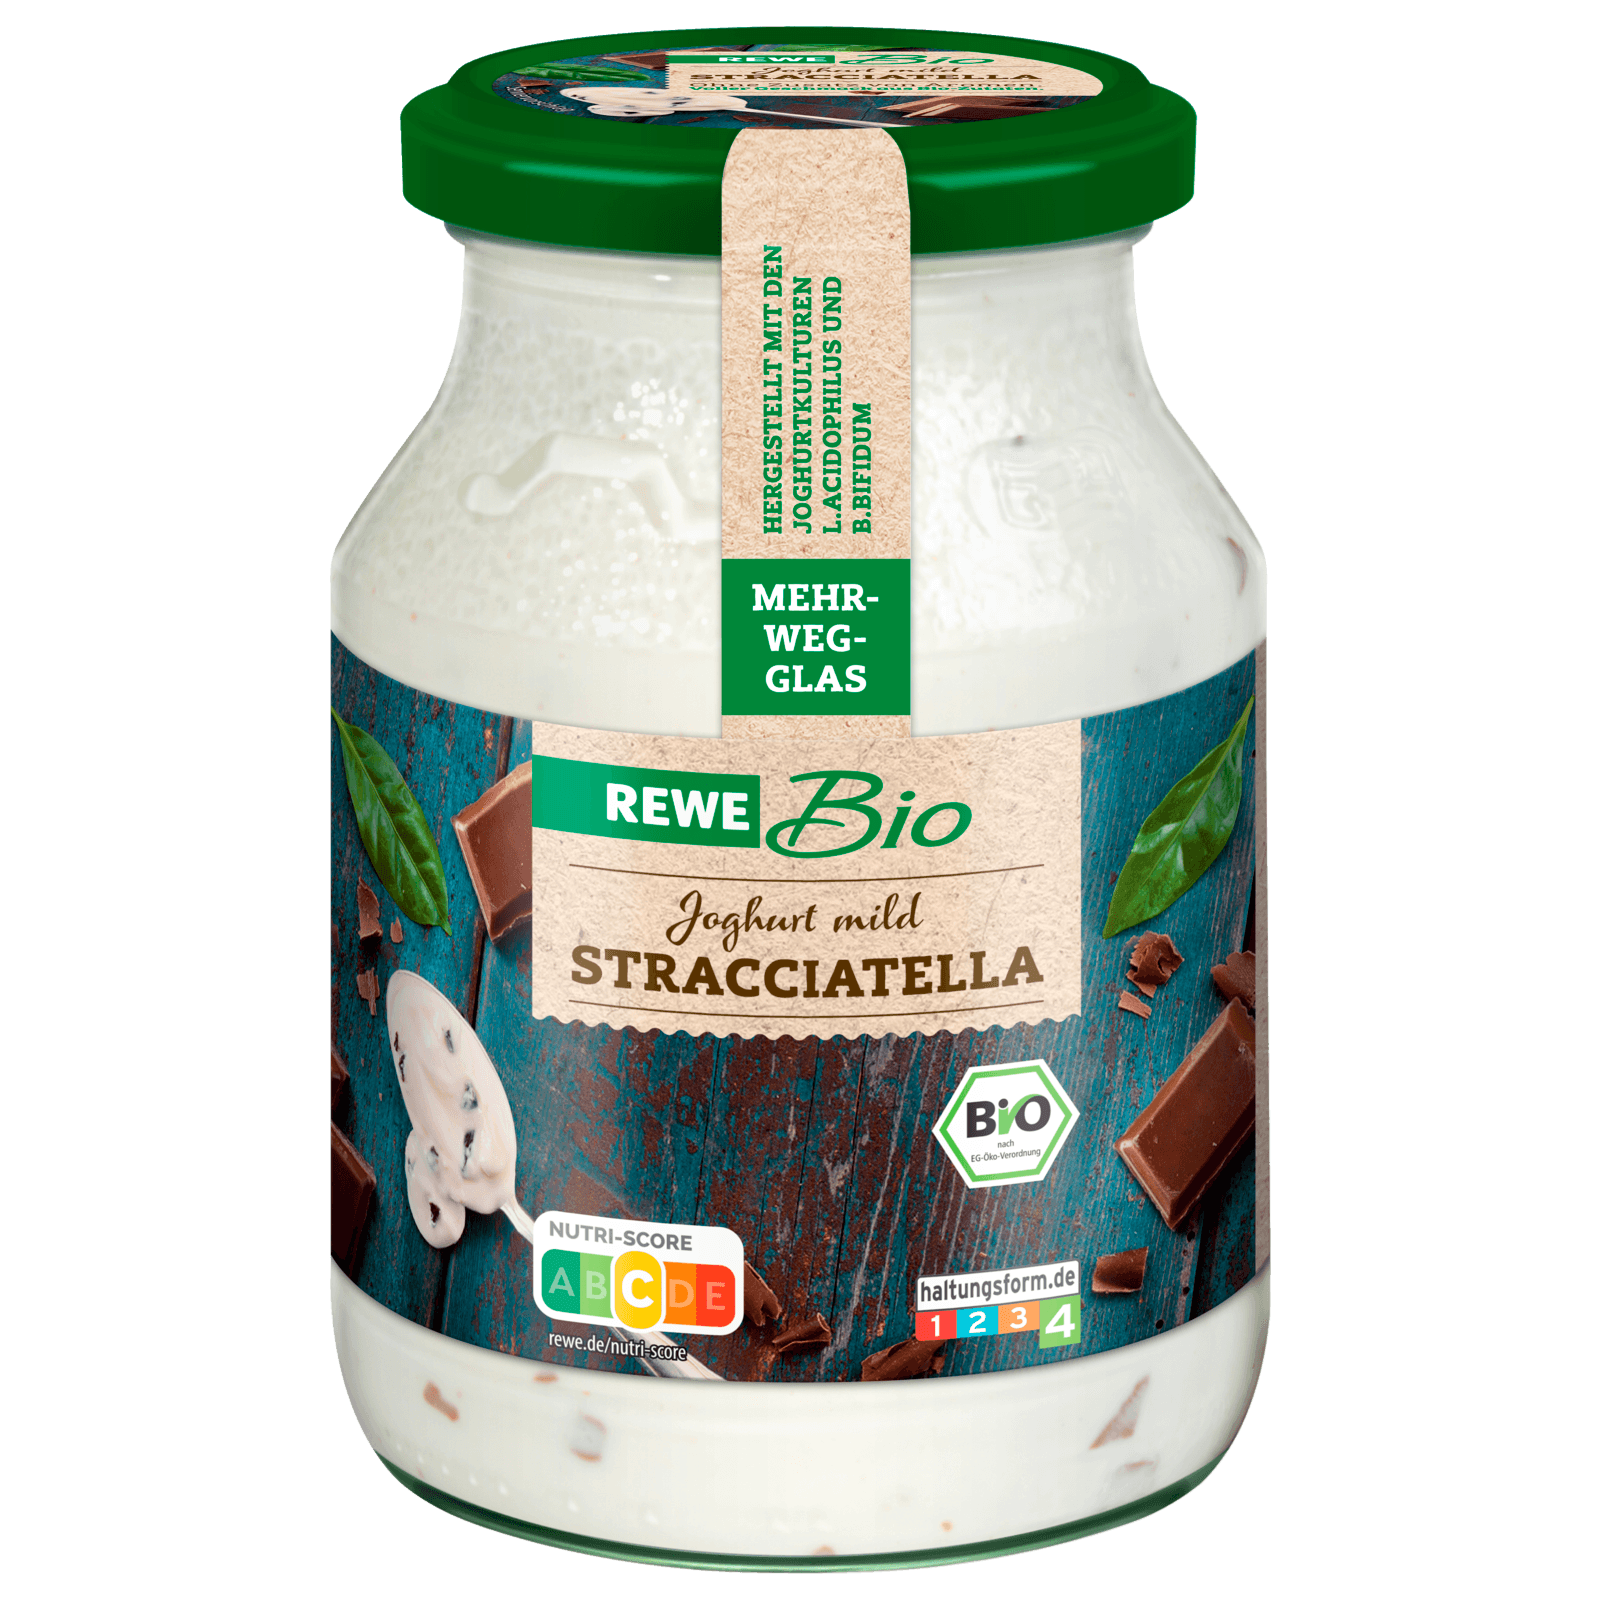 REWE Bio Joghurt mild mit Stracciatella 500g